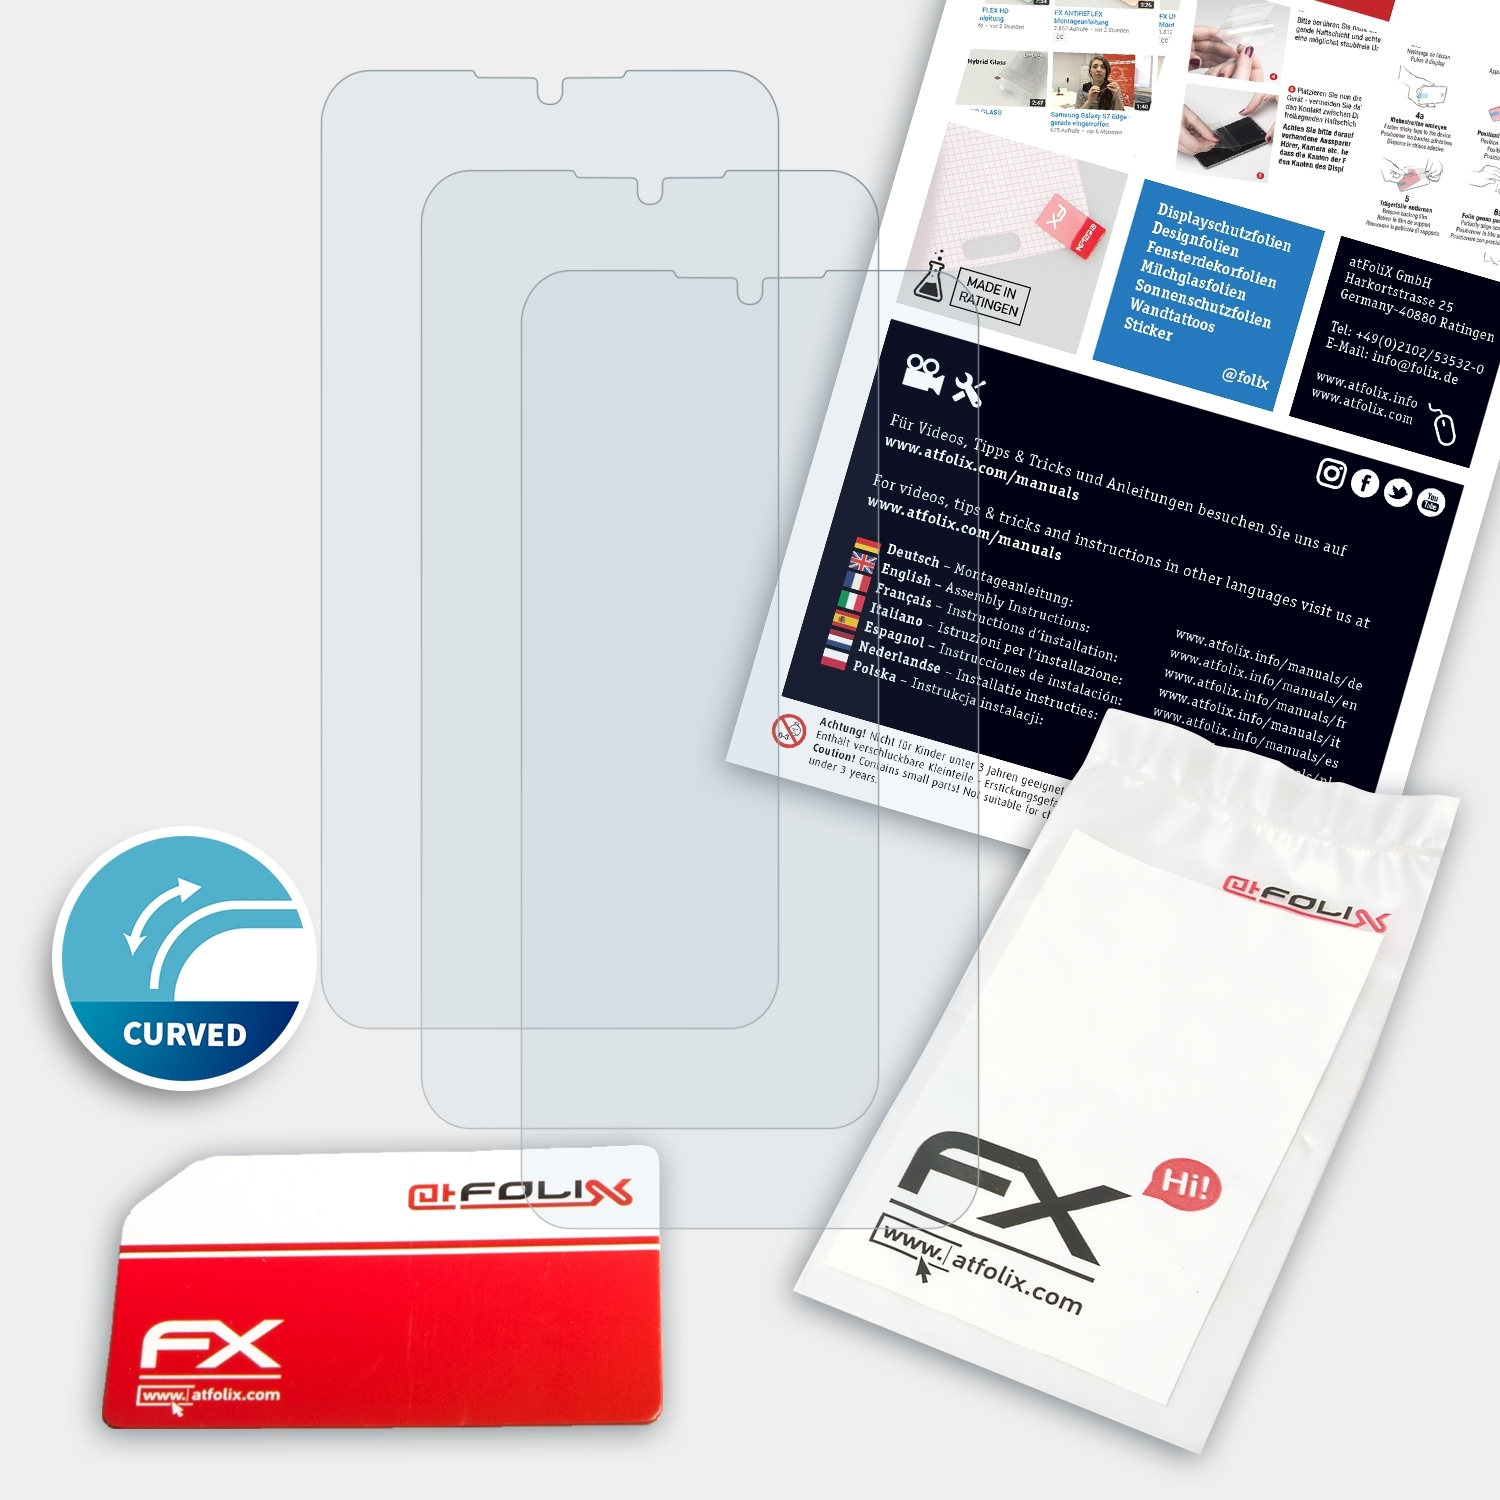 ATFOLIX 3x Displayschutz(für UMiDigi Pro) A5 FX-ActiFleX